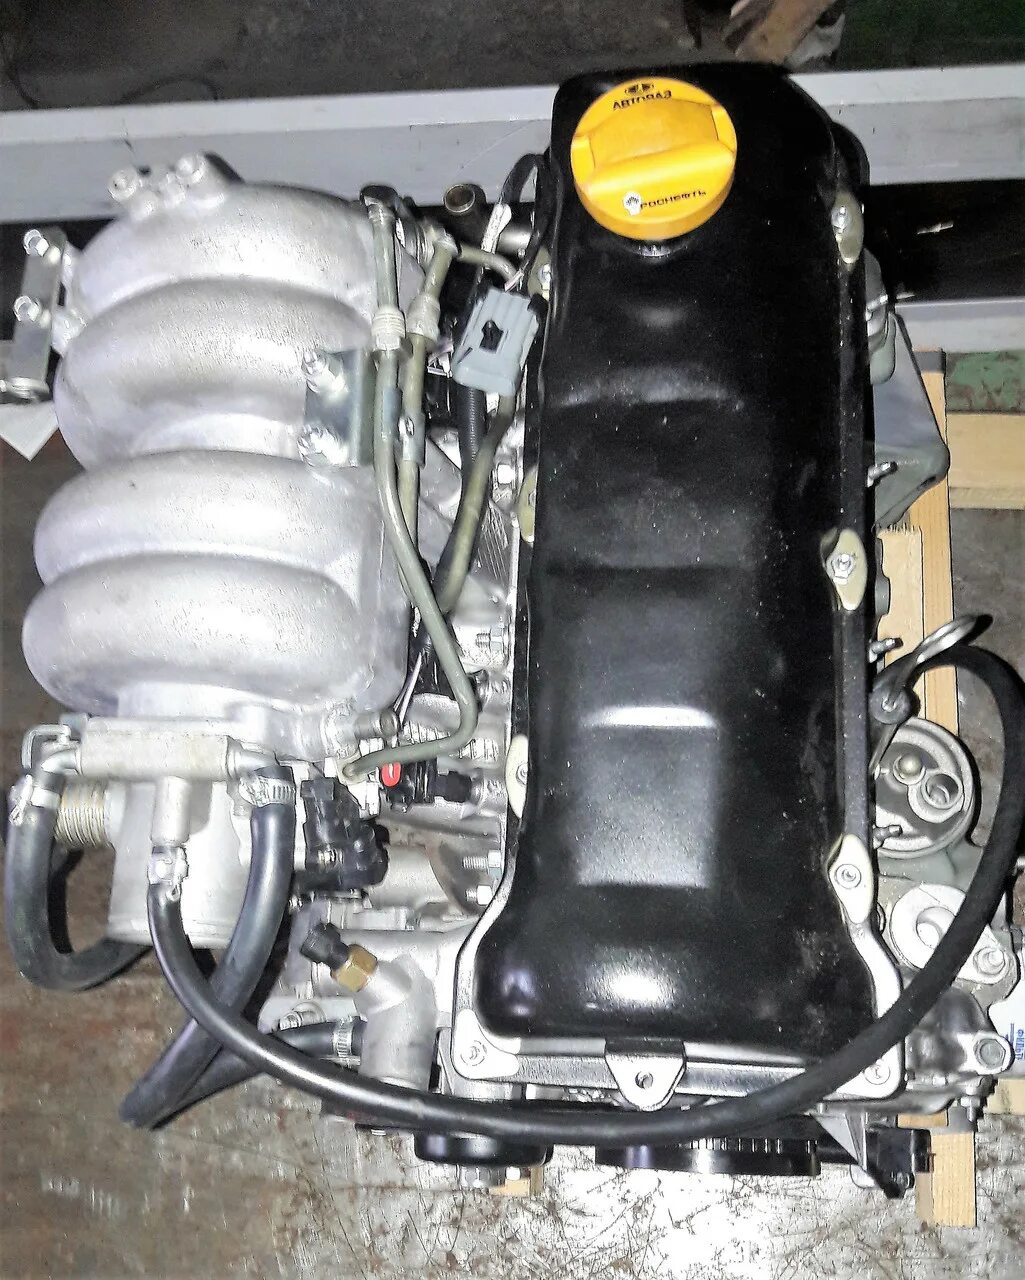 Мотор семерки. Двигатель ВАЗ 21067 инжектор. Инжекторный двигатель ВАЗ 2107. Мотор ВАЗ 1.6 ВАЗ 2107. ВАЗ 2107 двигатель 1.7.